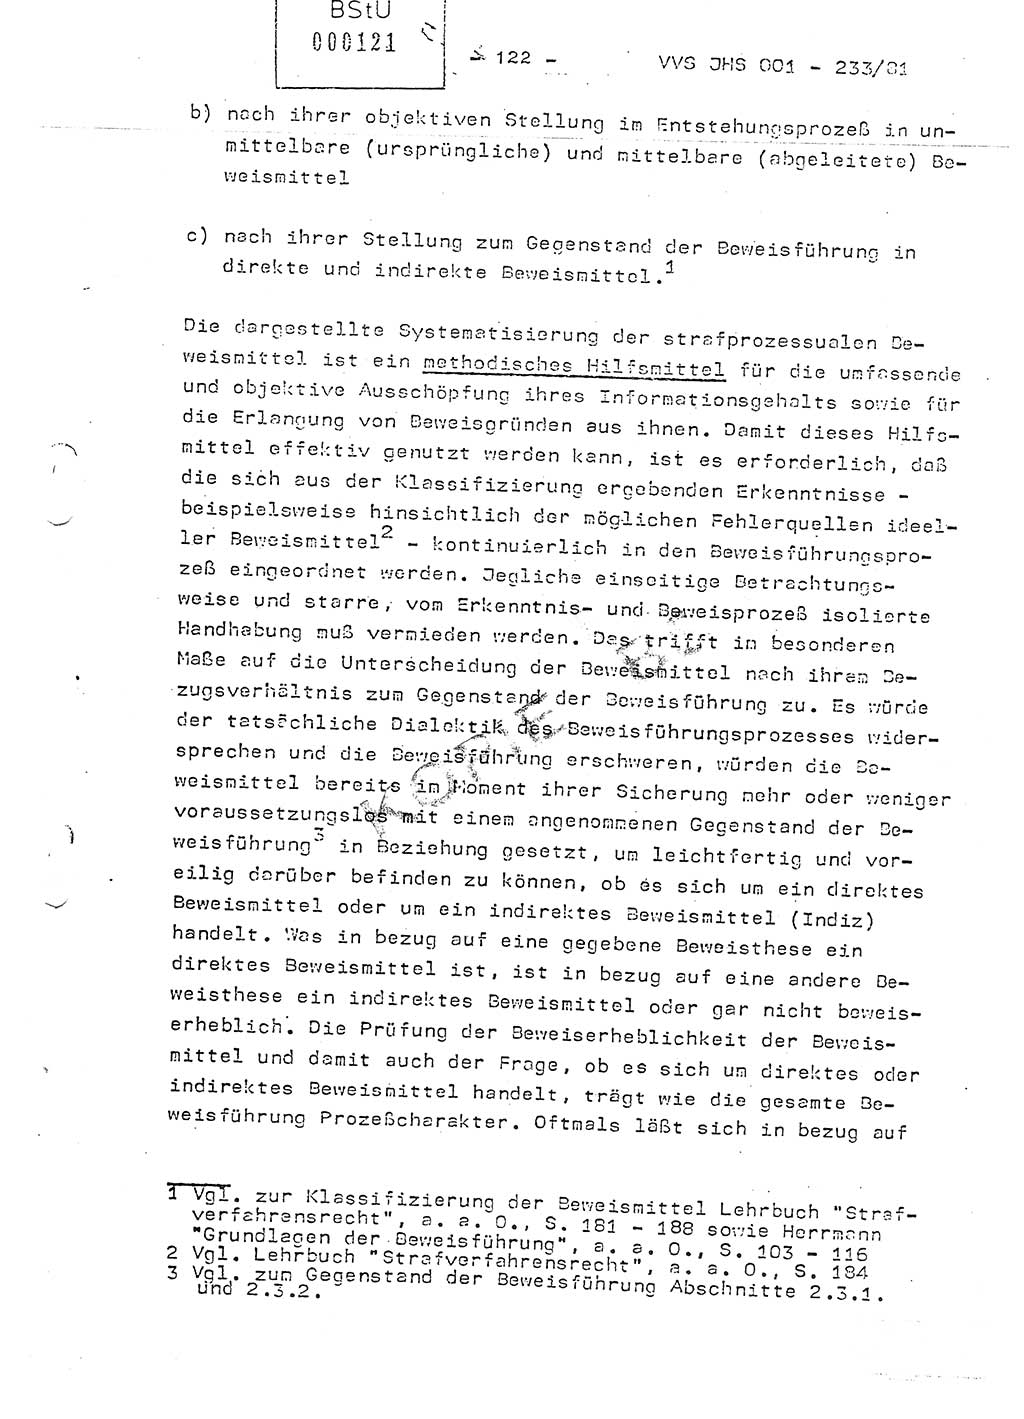 Dissertation Oberstleutnant Horst Zank (JHS), Oberstleutnant Dr. Karl-Heinz Knoblauch (JHS), Oberstleutnant Gustav-Adolf Kowalewski (HA Ⅸ), Oberstleutnant Wolfgang Plötner (HA Ⅸ), Ministerium für Staatssicherheit (MfS) [Deutsche Demokratische Republik (DDR)], Juristische Hochschule (JHS), Vertrauliche Verschlußsache (VVS) o001-233/81, Potsdam 1981, Blatt 122 (Diss. MfS DDR JHS VVS o001-233/81 1981, Bl. 122)